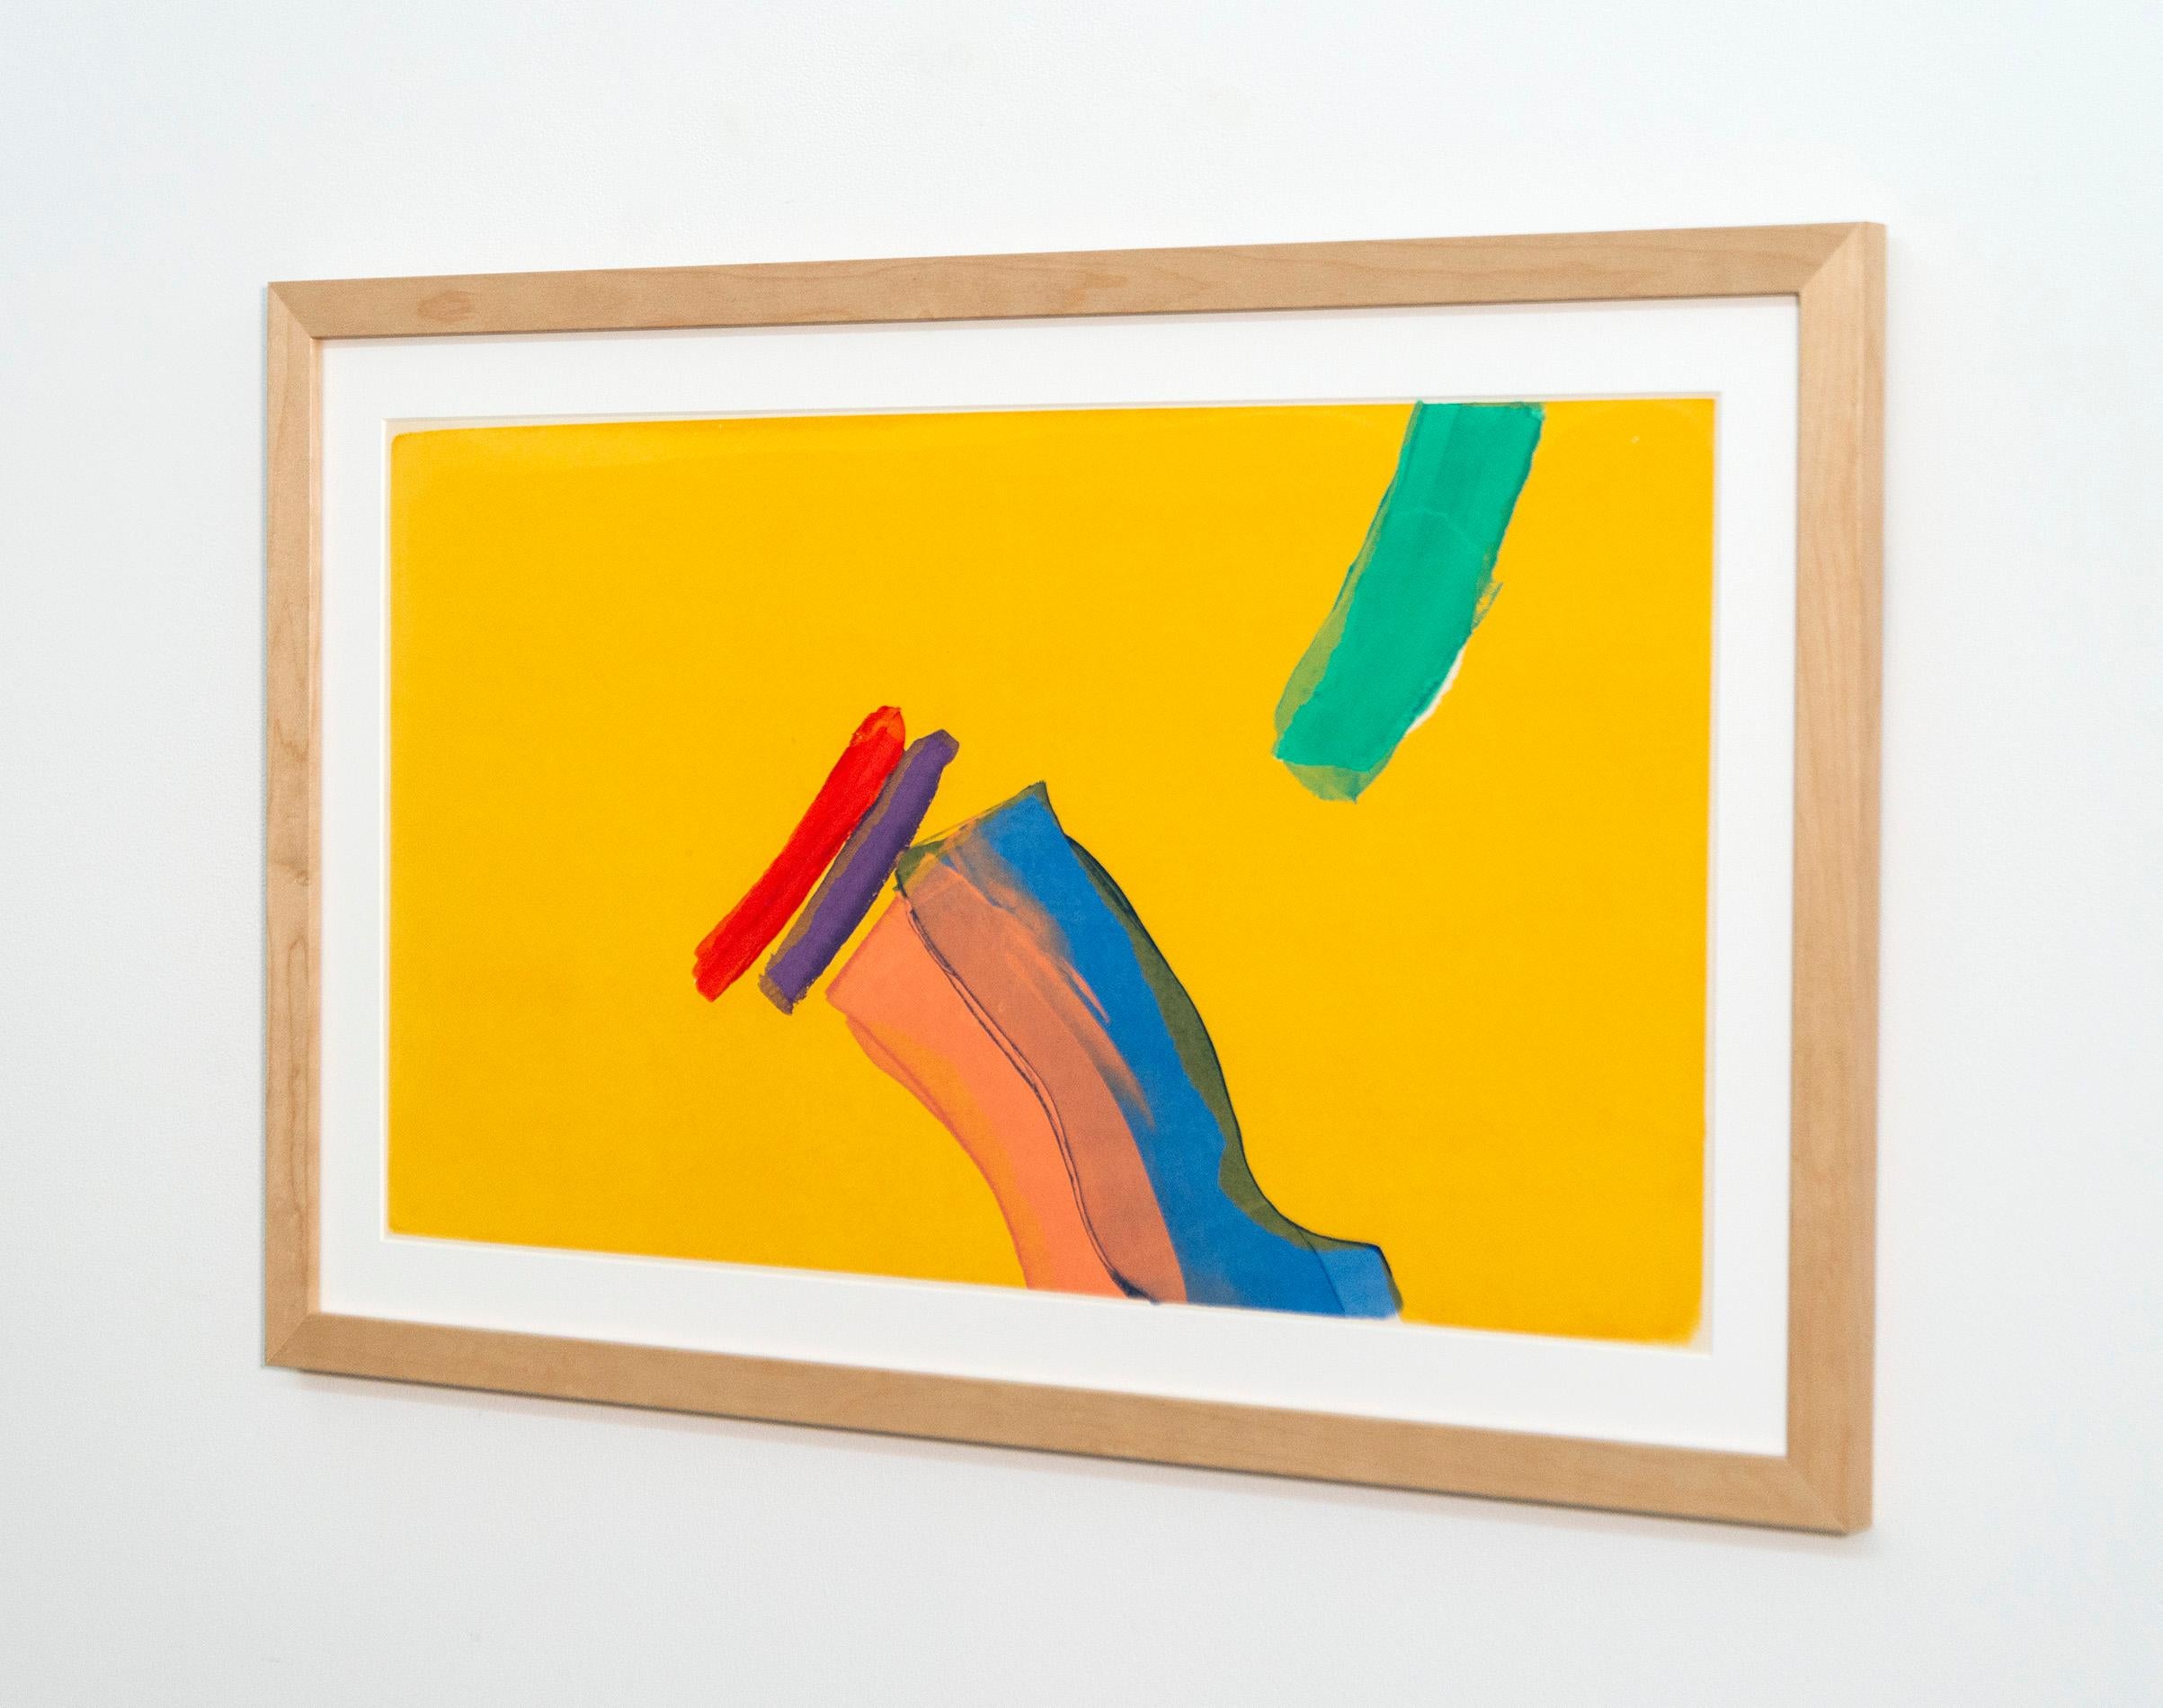 Des coups de pinceau expressifs aux couleurs vives jouent sur un jaune ensoleillé dans cette composition contemporaine d'Yvonne Lammerich. La forme de cette sérigraphie sur papier est dynamique et abstraite, la palette de couleurs orange, mauve,